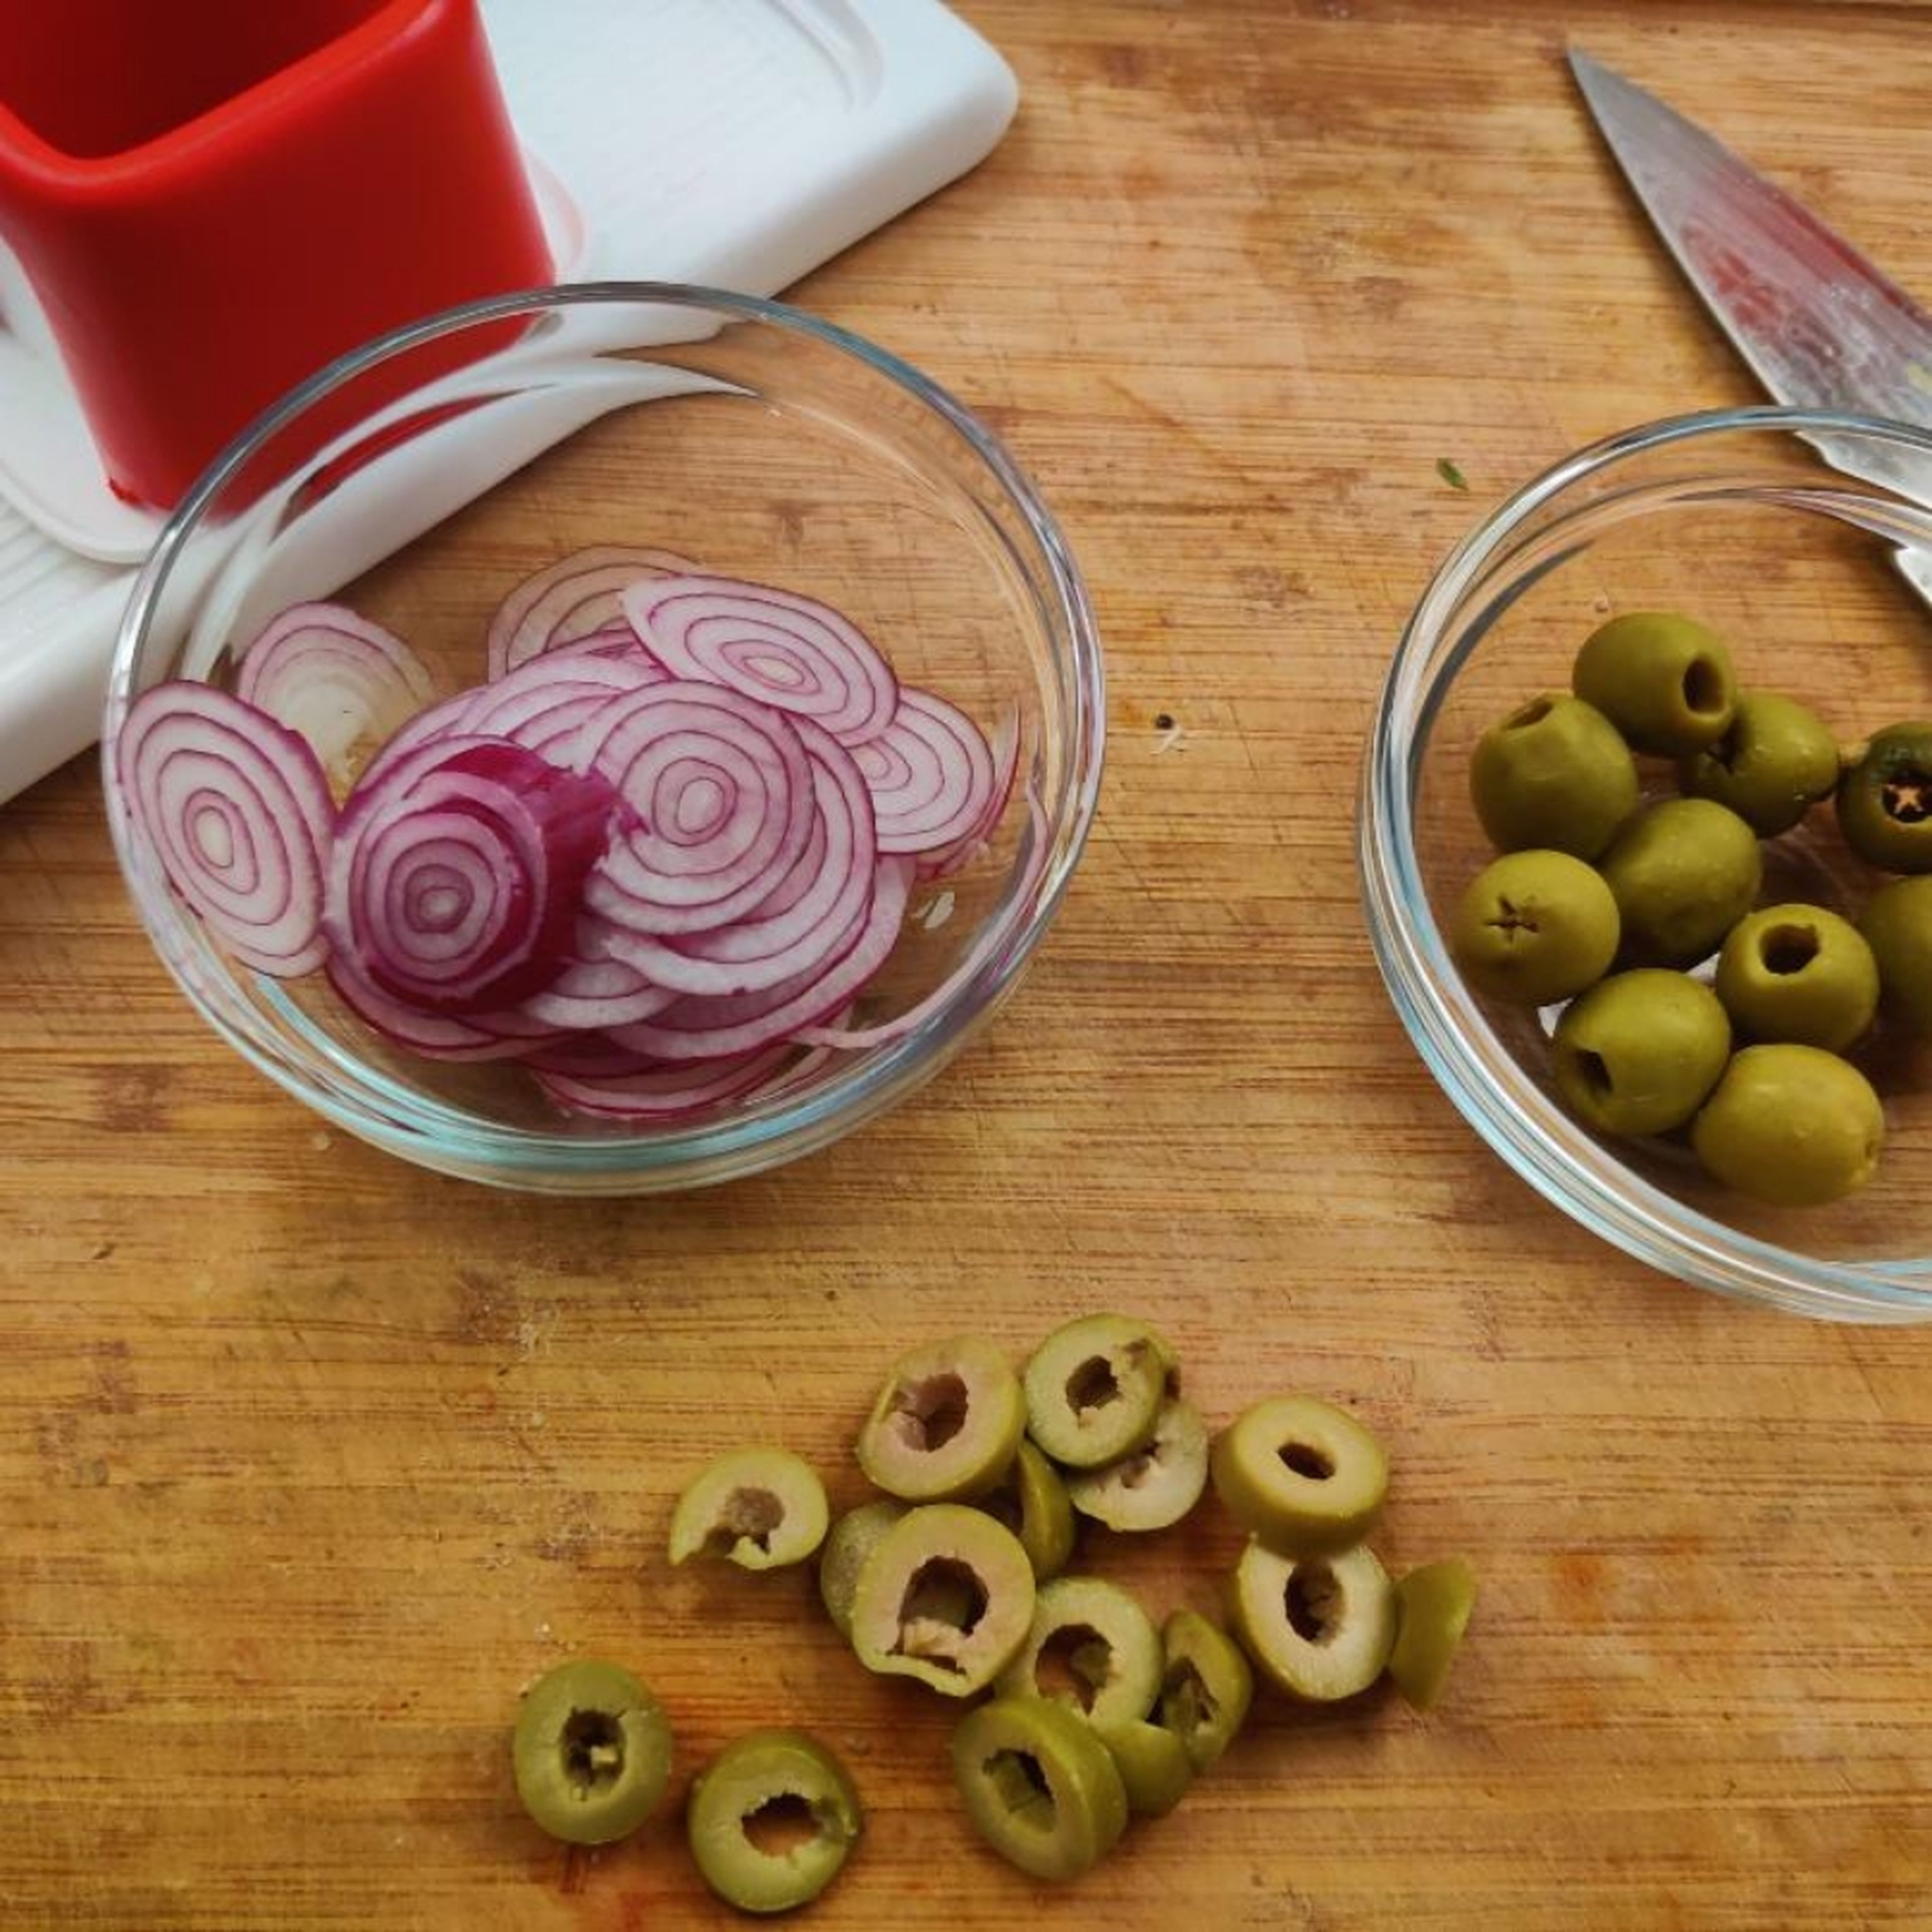 Backofen auf 200°C (Umluft, 220g Ober-Unterhitze) vorheizen. Die Oliven in Ringe schneiden. Die Zwiebel dünn hobeln (oder mit einem Messer in dünne Scheiben schneiden). Die Zwiebelscheiben auseinander nehmen, so dass Ringe entstehen.